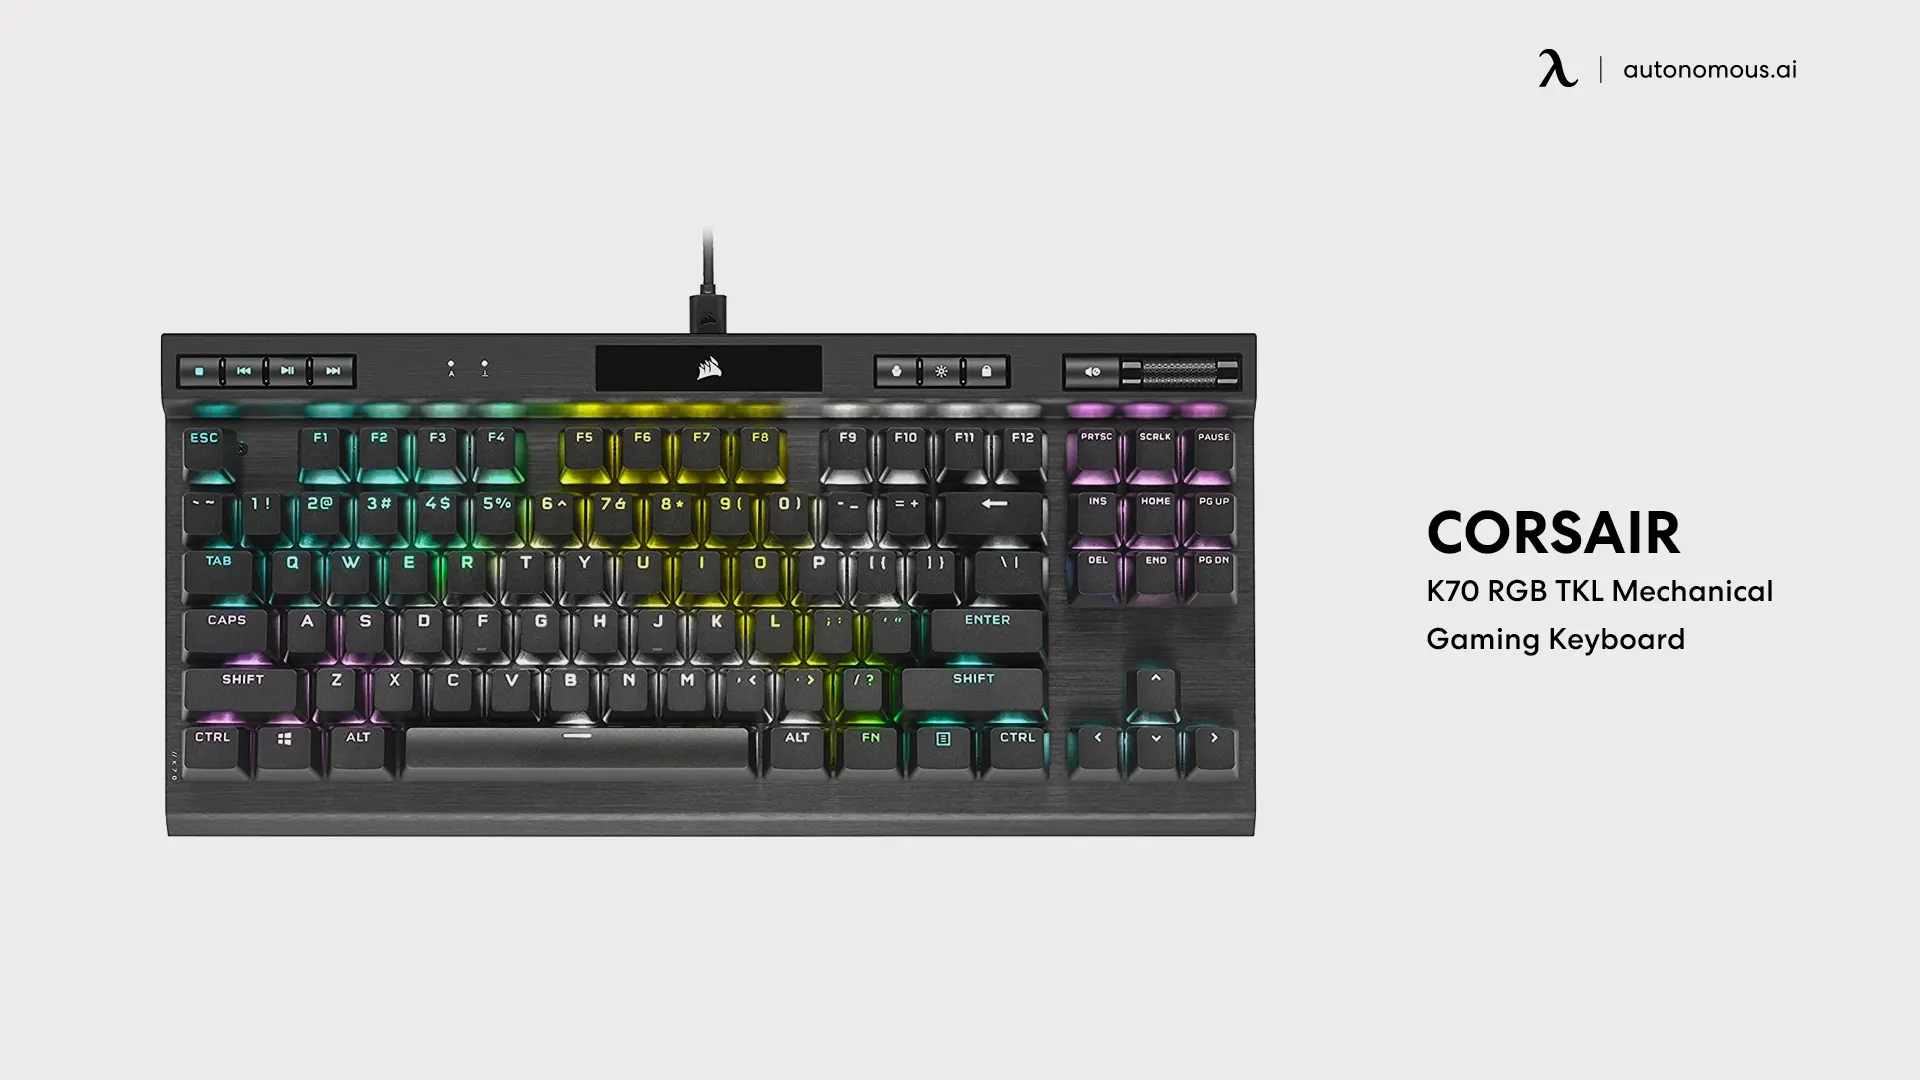 CORSAIR K70 RGB TKL Mechanical Gaming Keyboard